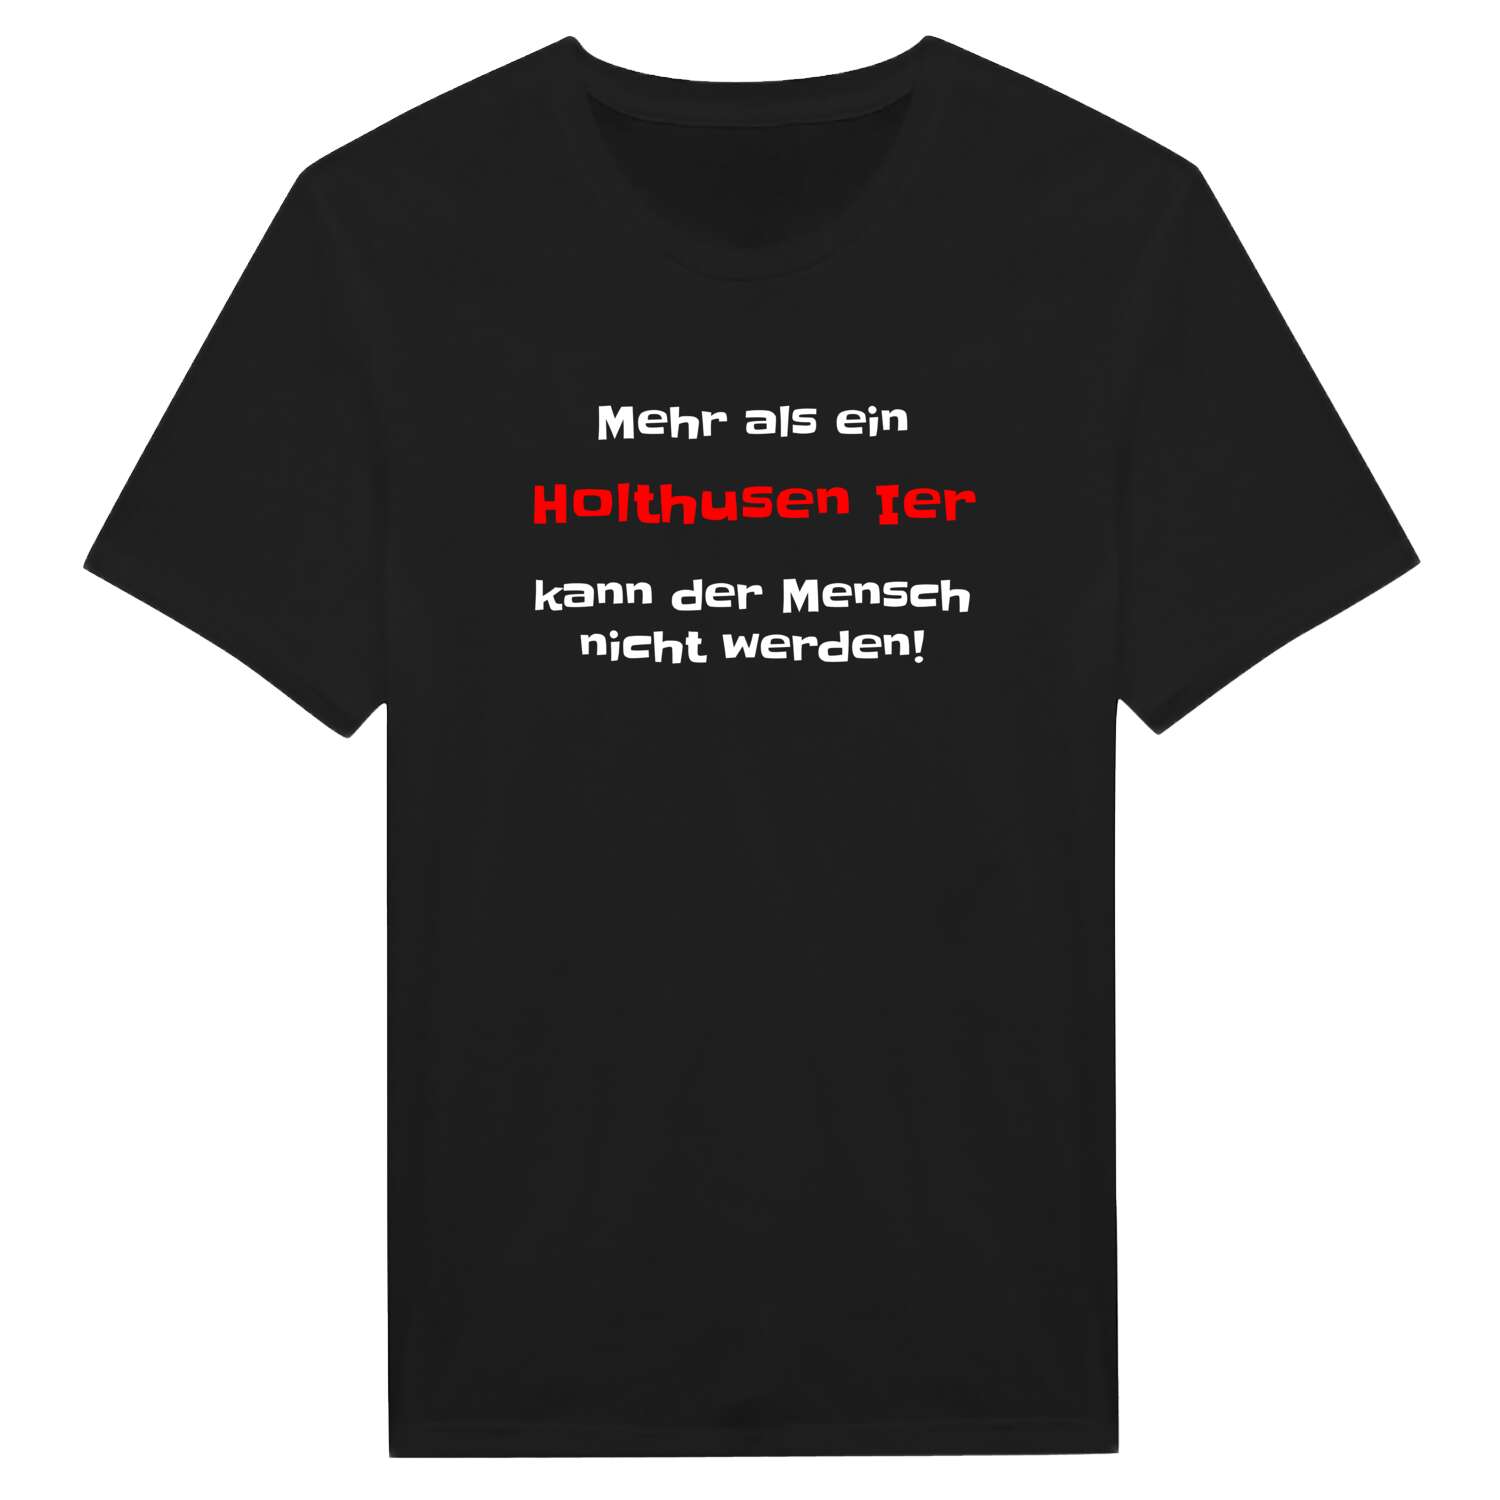 Holthusen I T-Shirt »Mehr als ein«